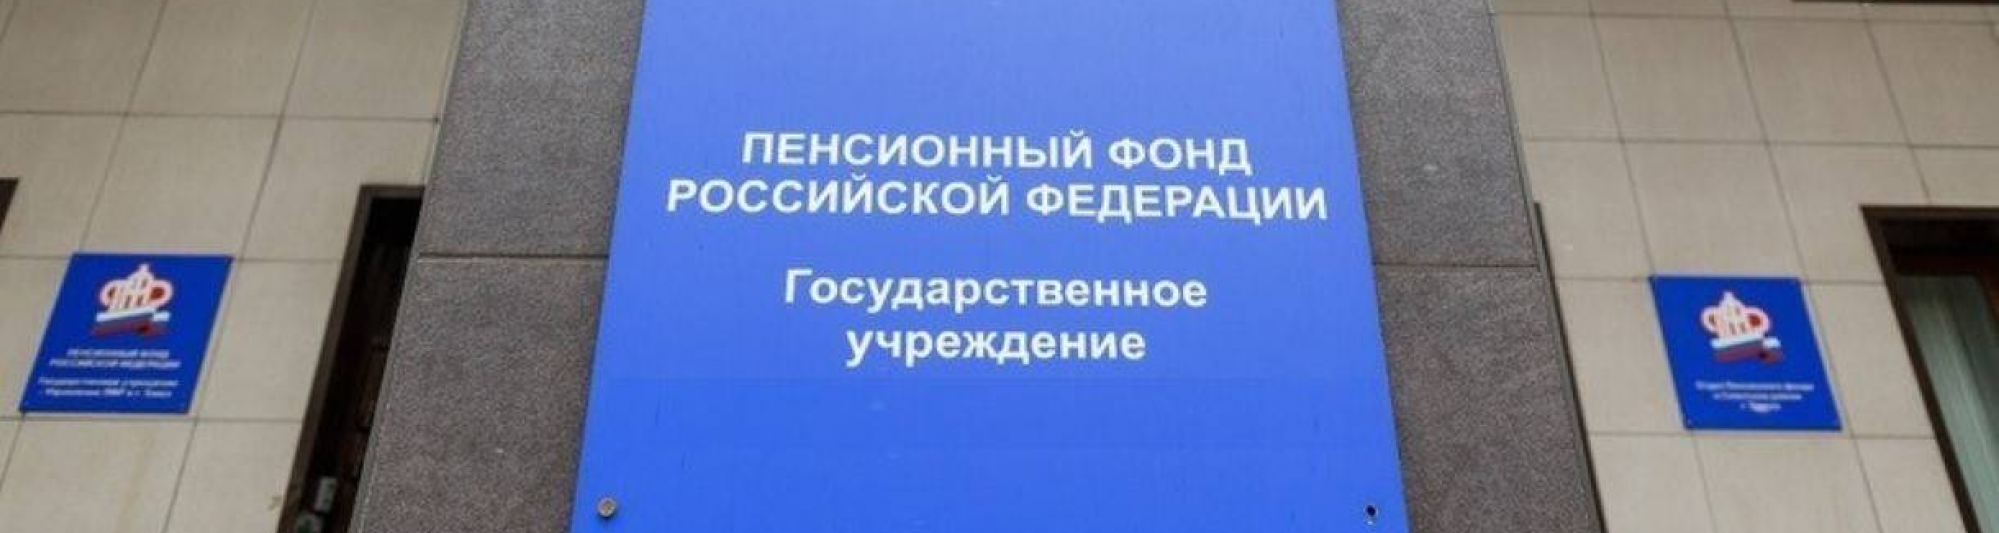 Чингис Акатаев поздравил сотрудников Пенсионного фонда